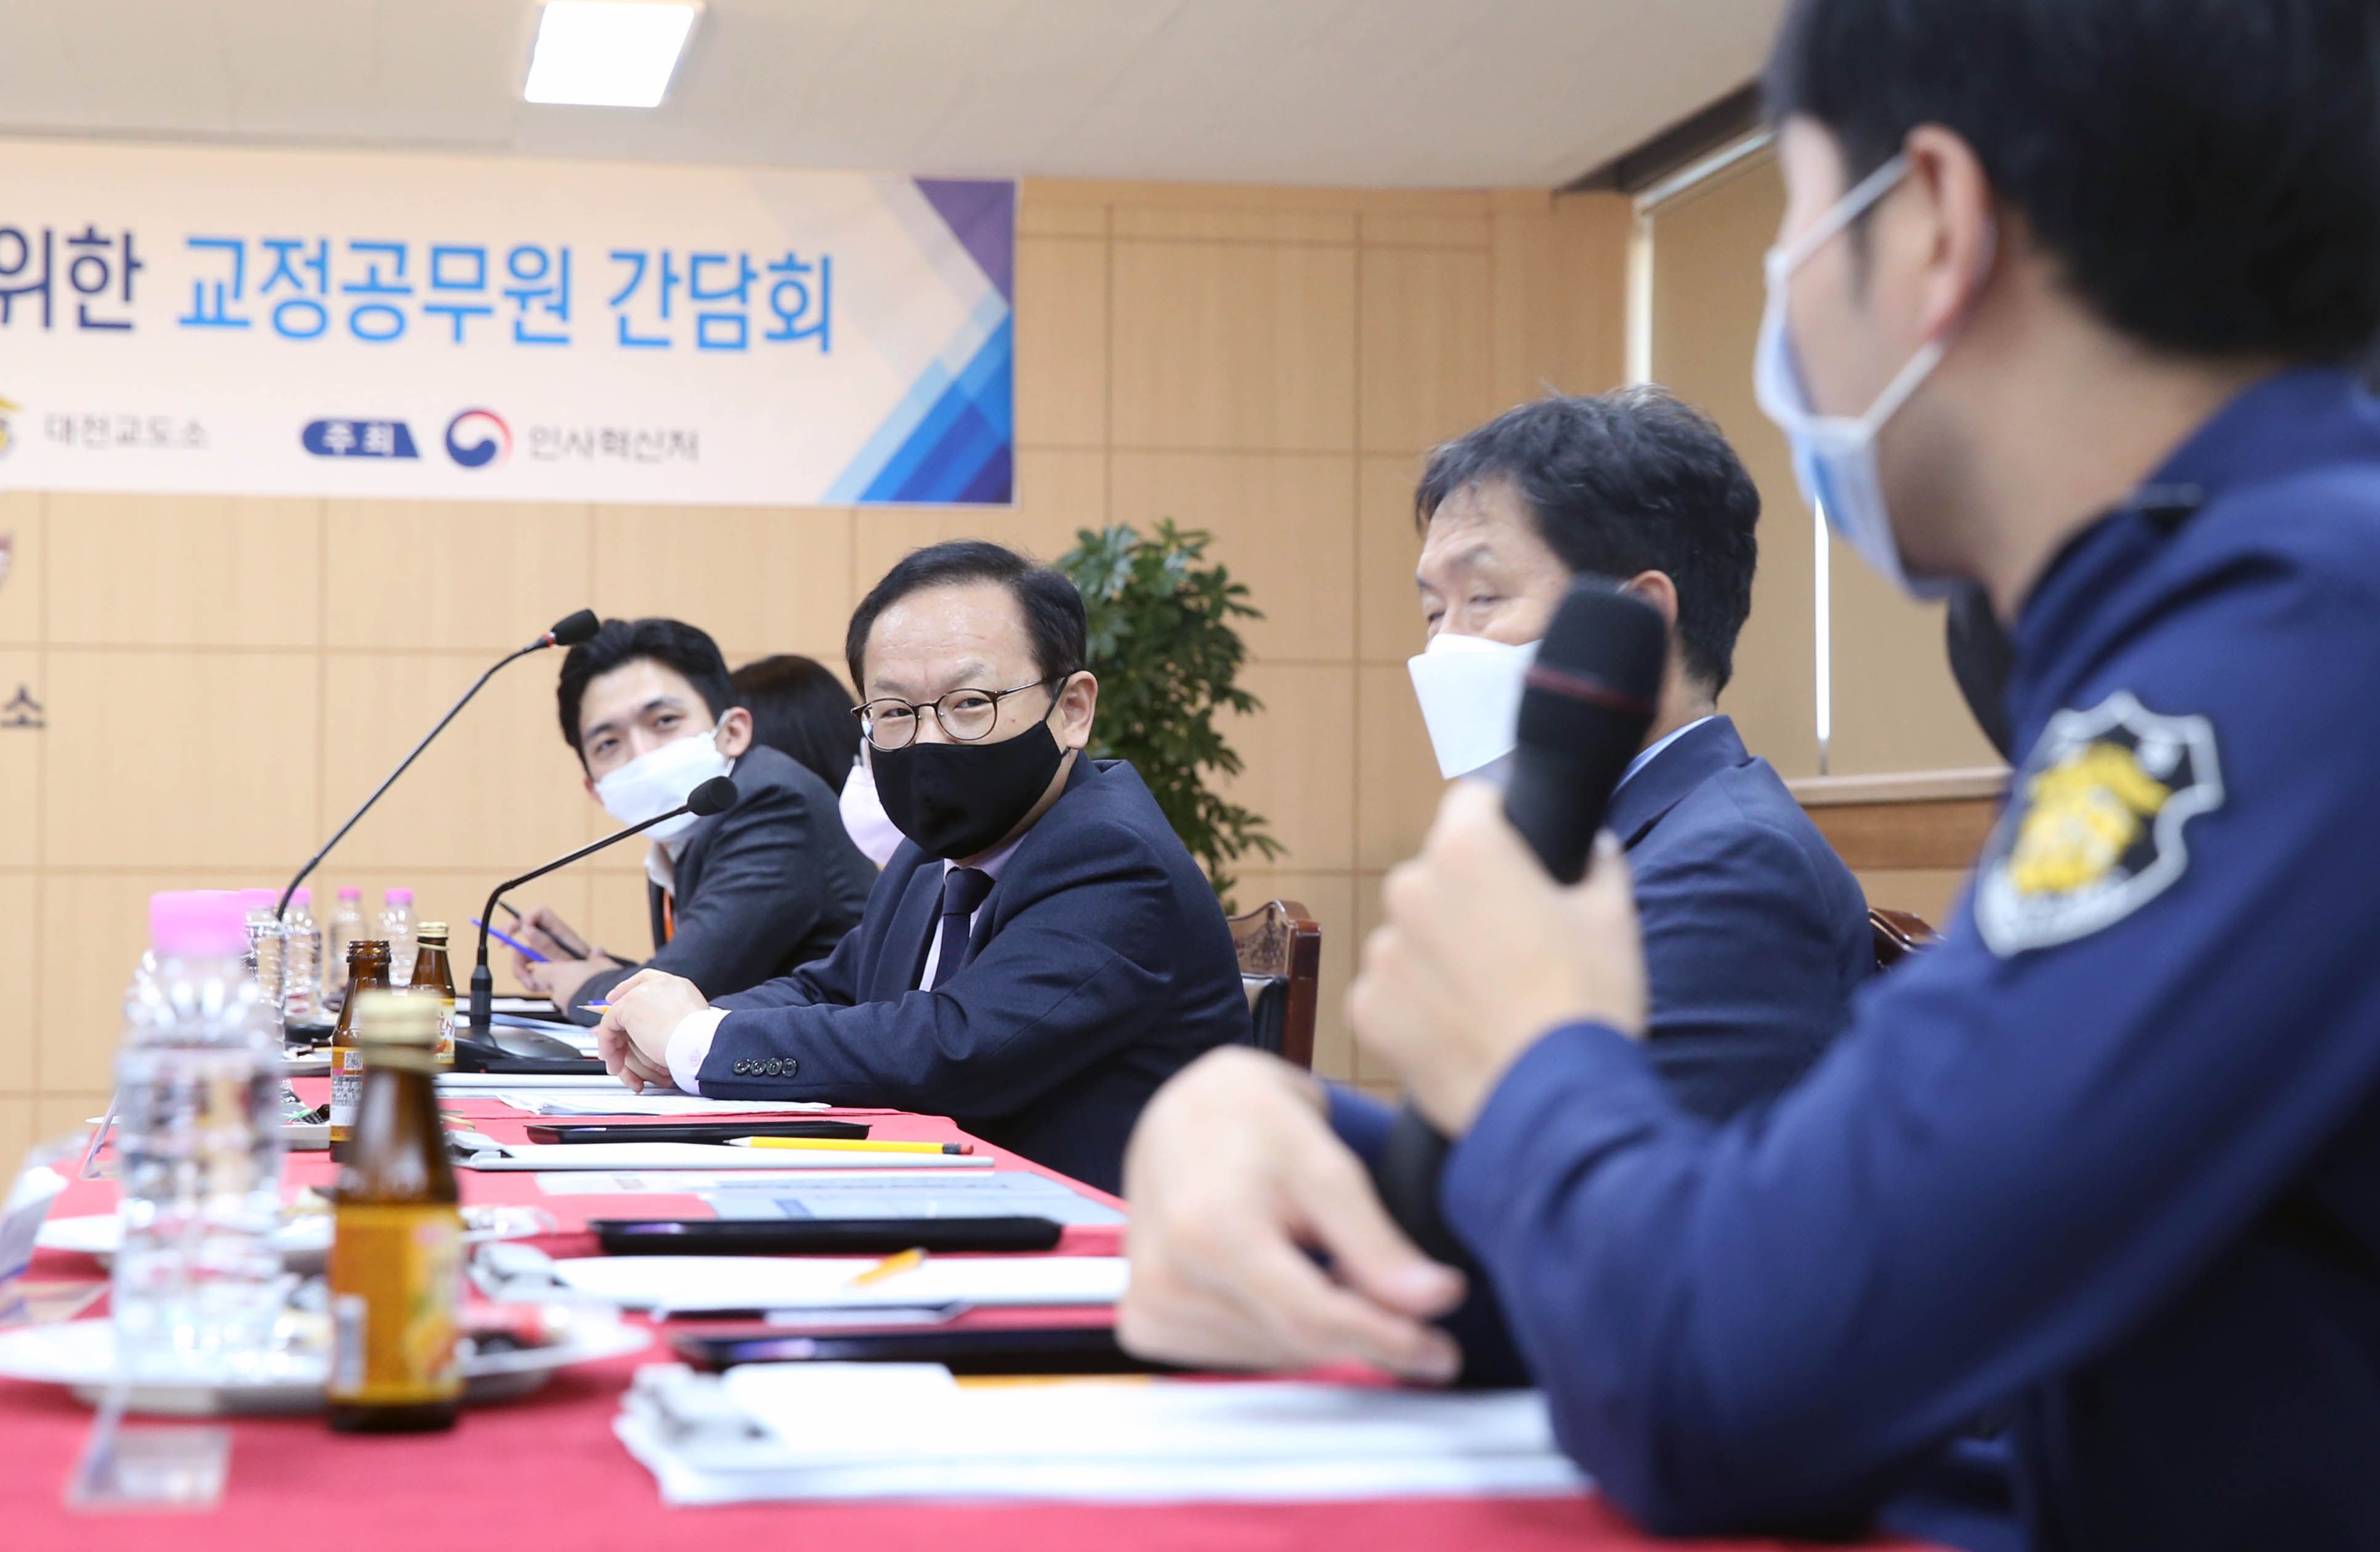 김승호 인사혁신처장이 10월 19일 대전교도소에서 열린 '활력있는 근무여건 조성을 위한 교정공무원 간담회'에 참석한 모습.